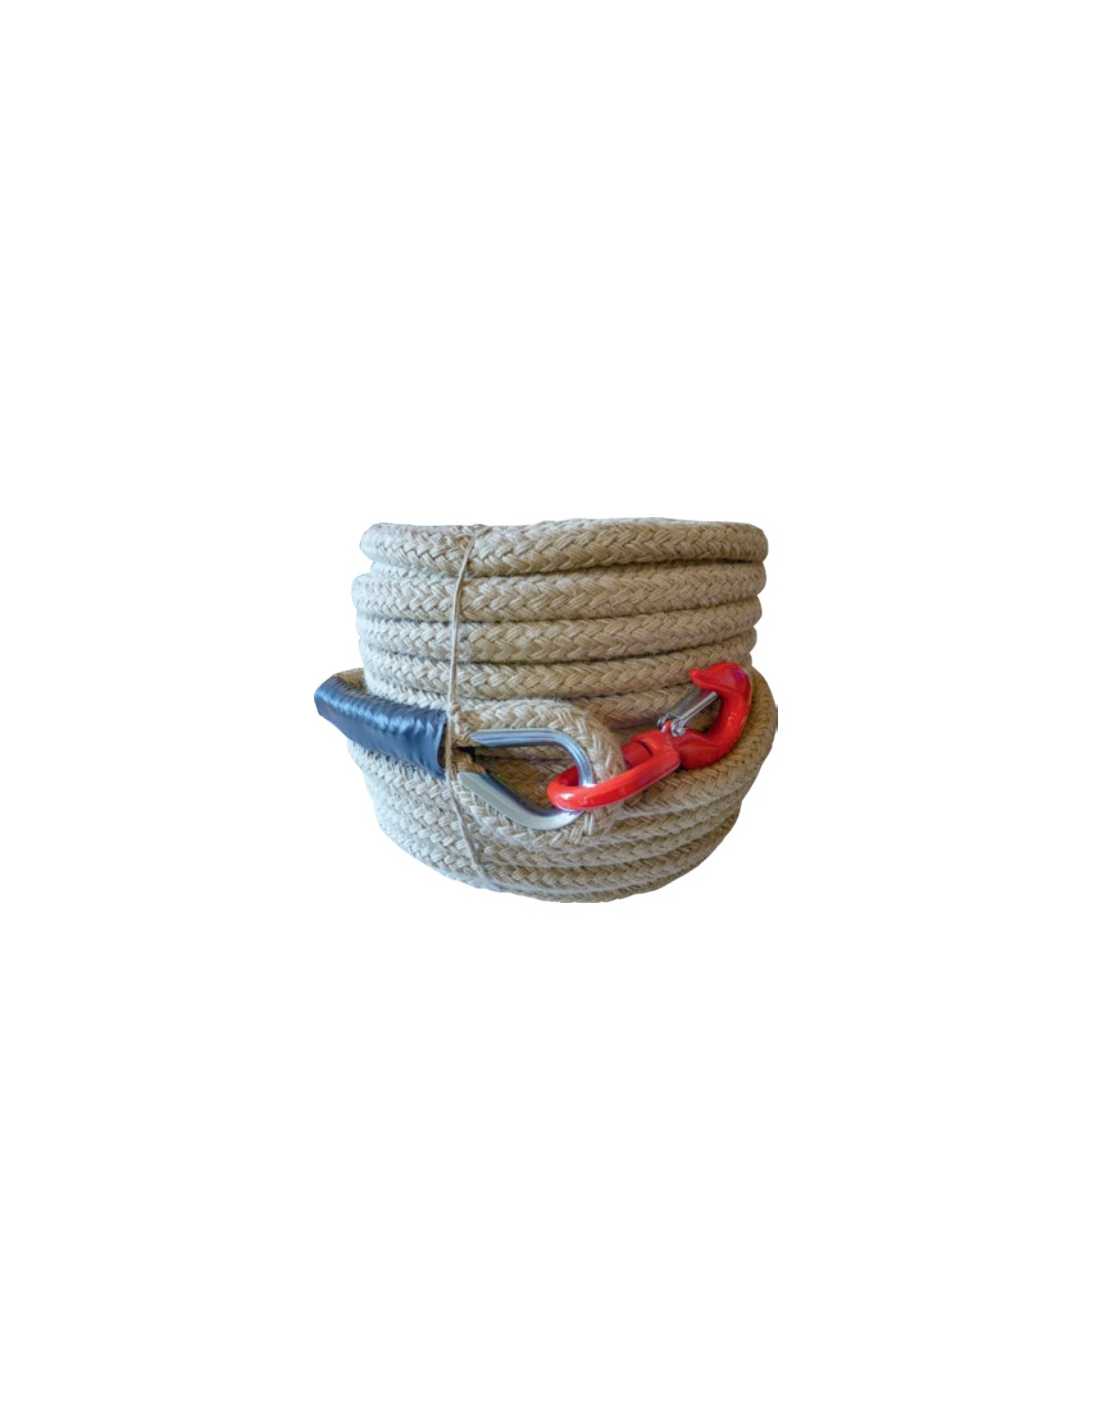 CORDERIE TOURNONAISE - Poulie clic avec crochet et linguet de sécurité